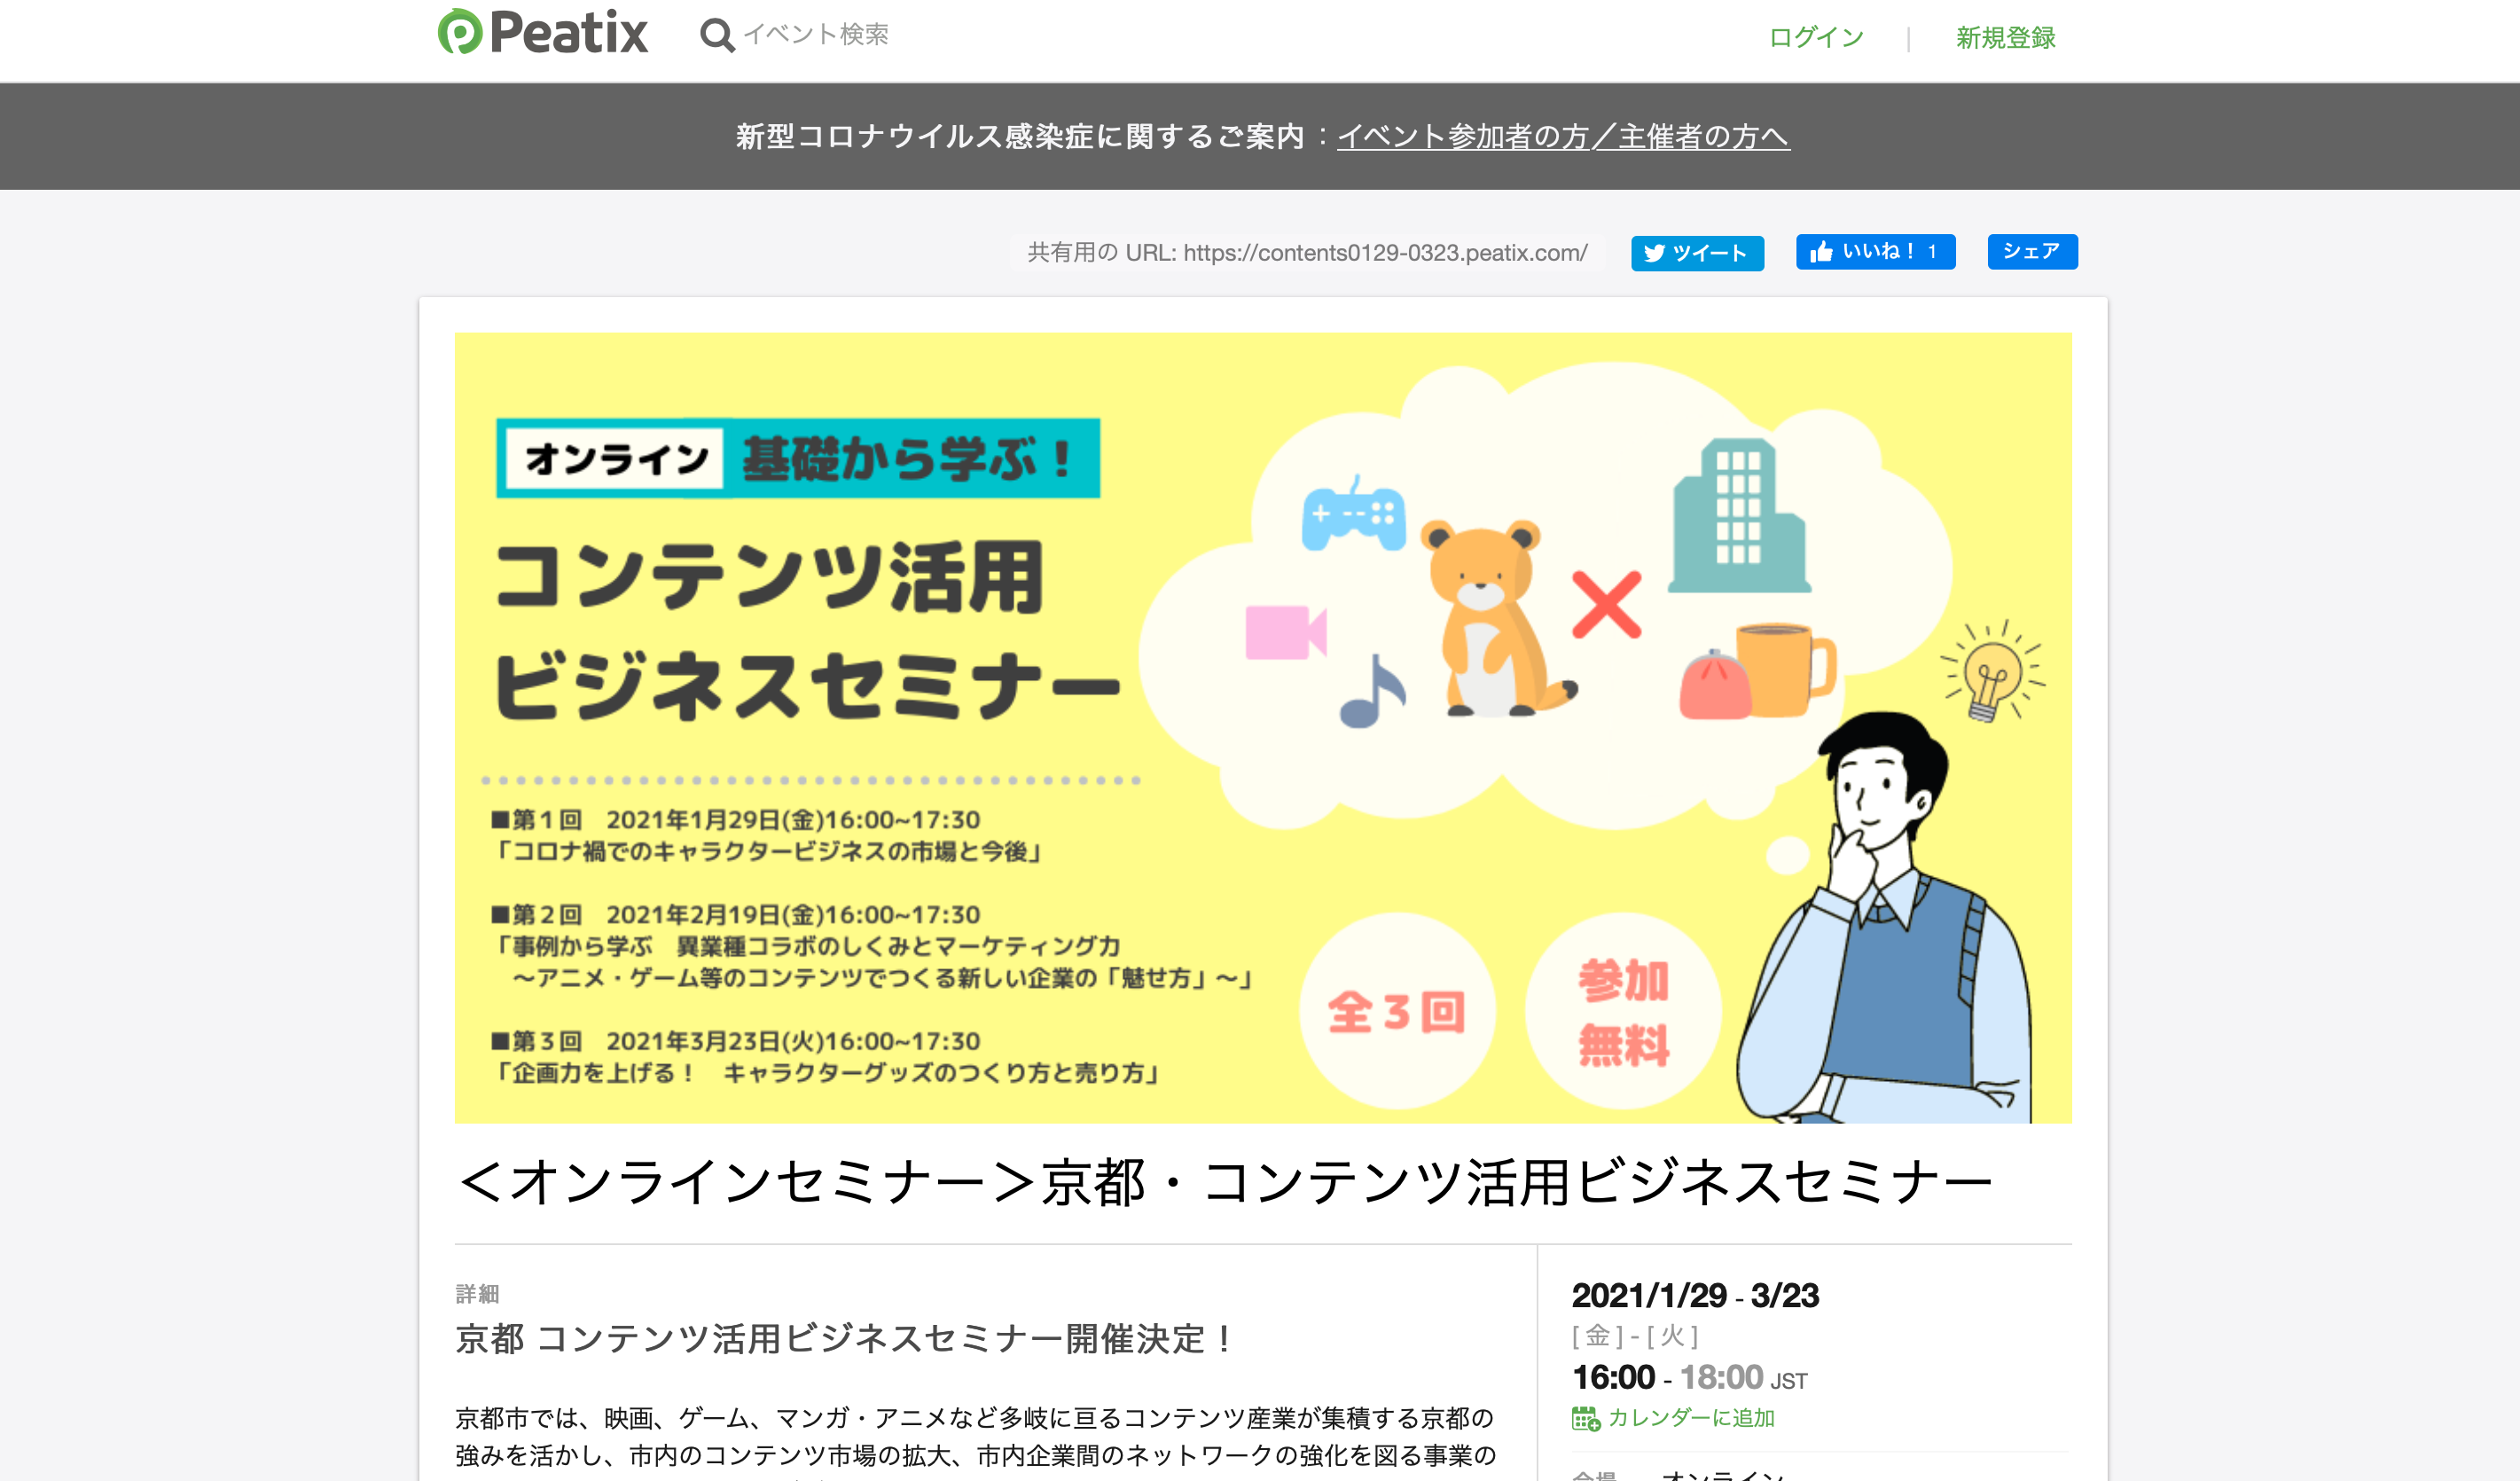 京都コンテンツ関連情報 事業者向け コンテンツ活用ビジネスセミナー が3月23日 火 にオンライン開催 アニメや漫画を使って会社やグッズを販売したい方にオススメ Kyoto Cmexポータルサイト